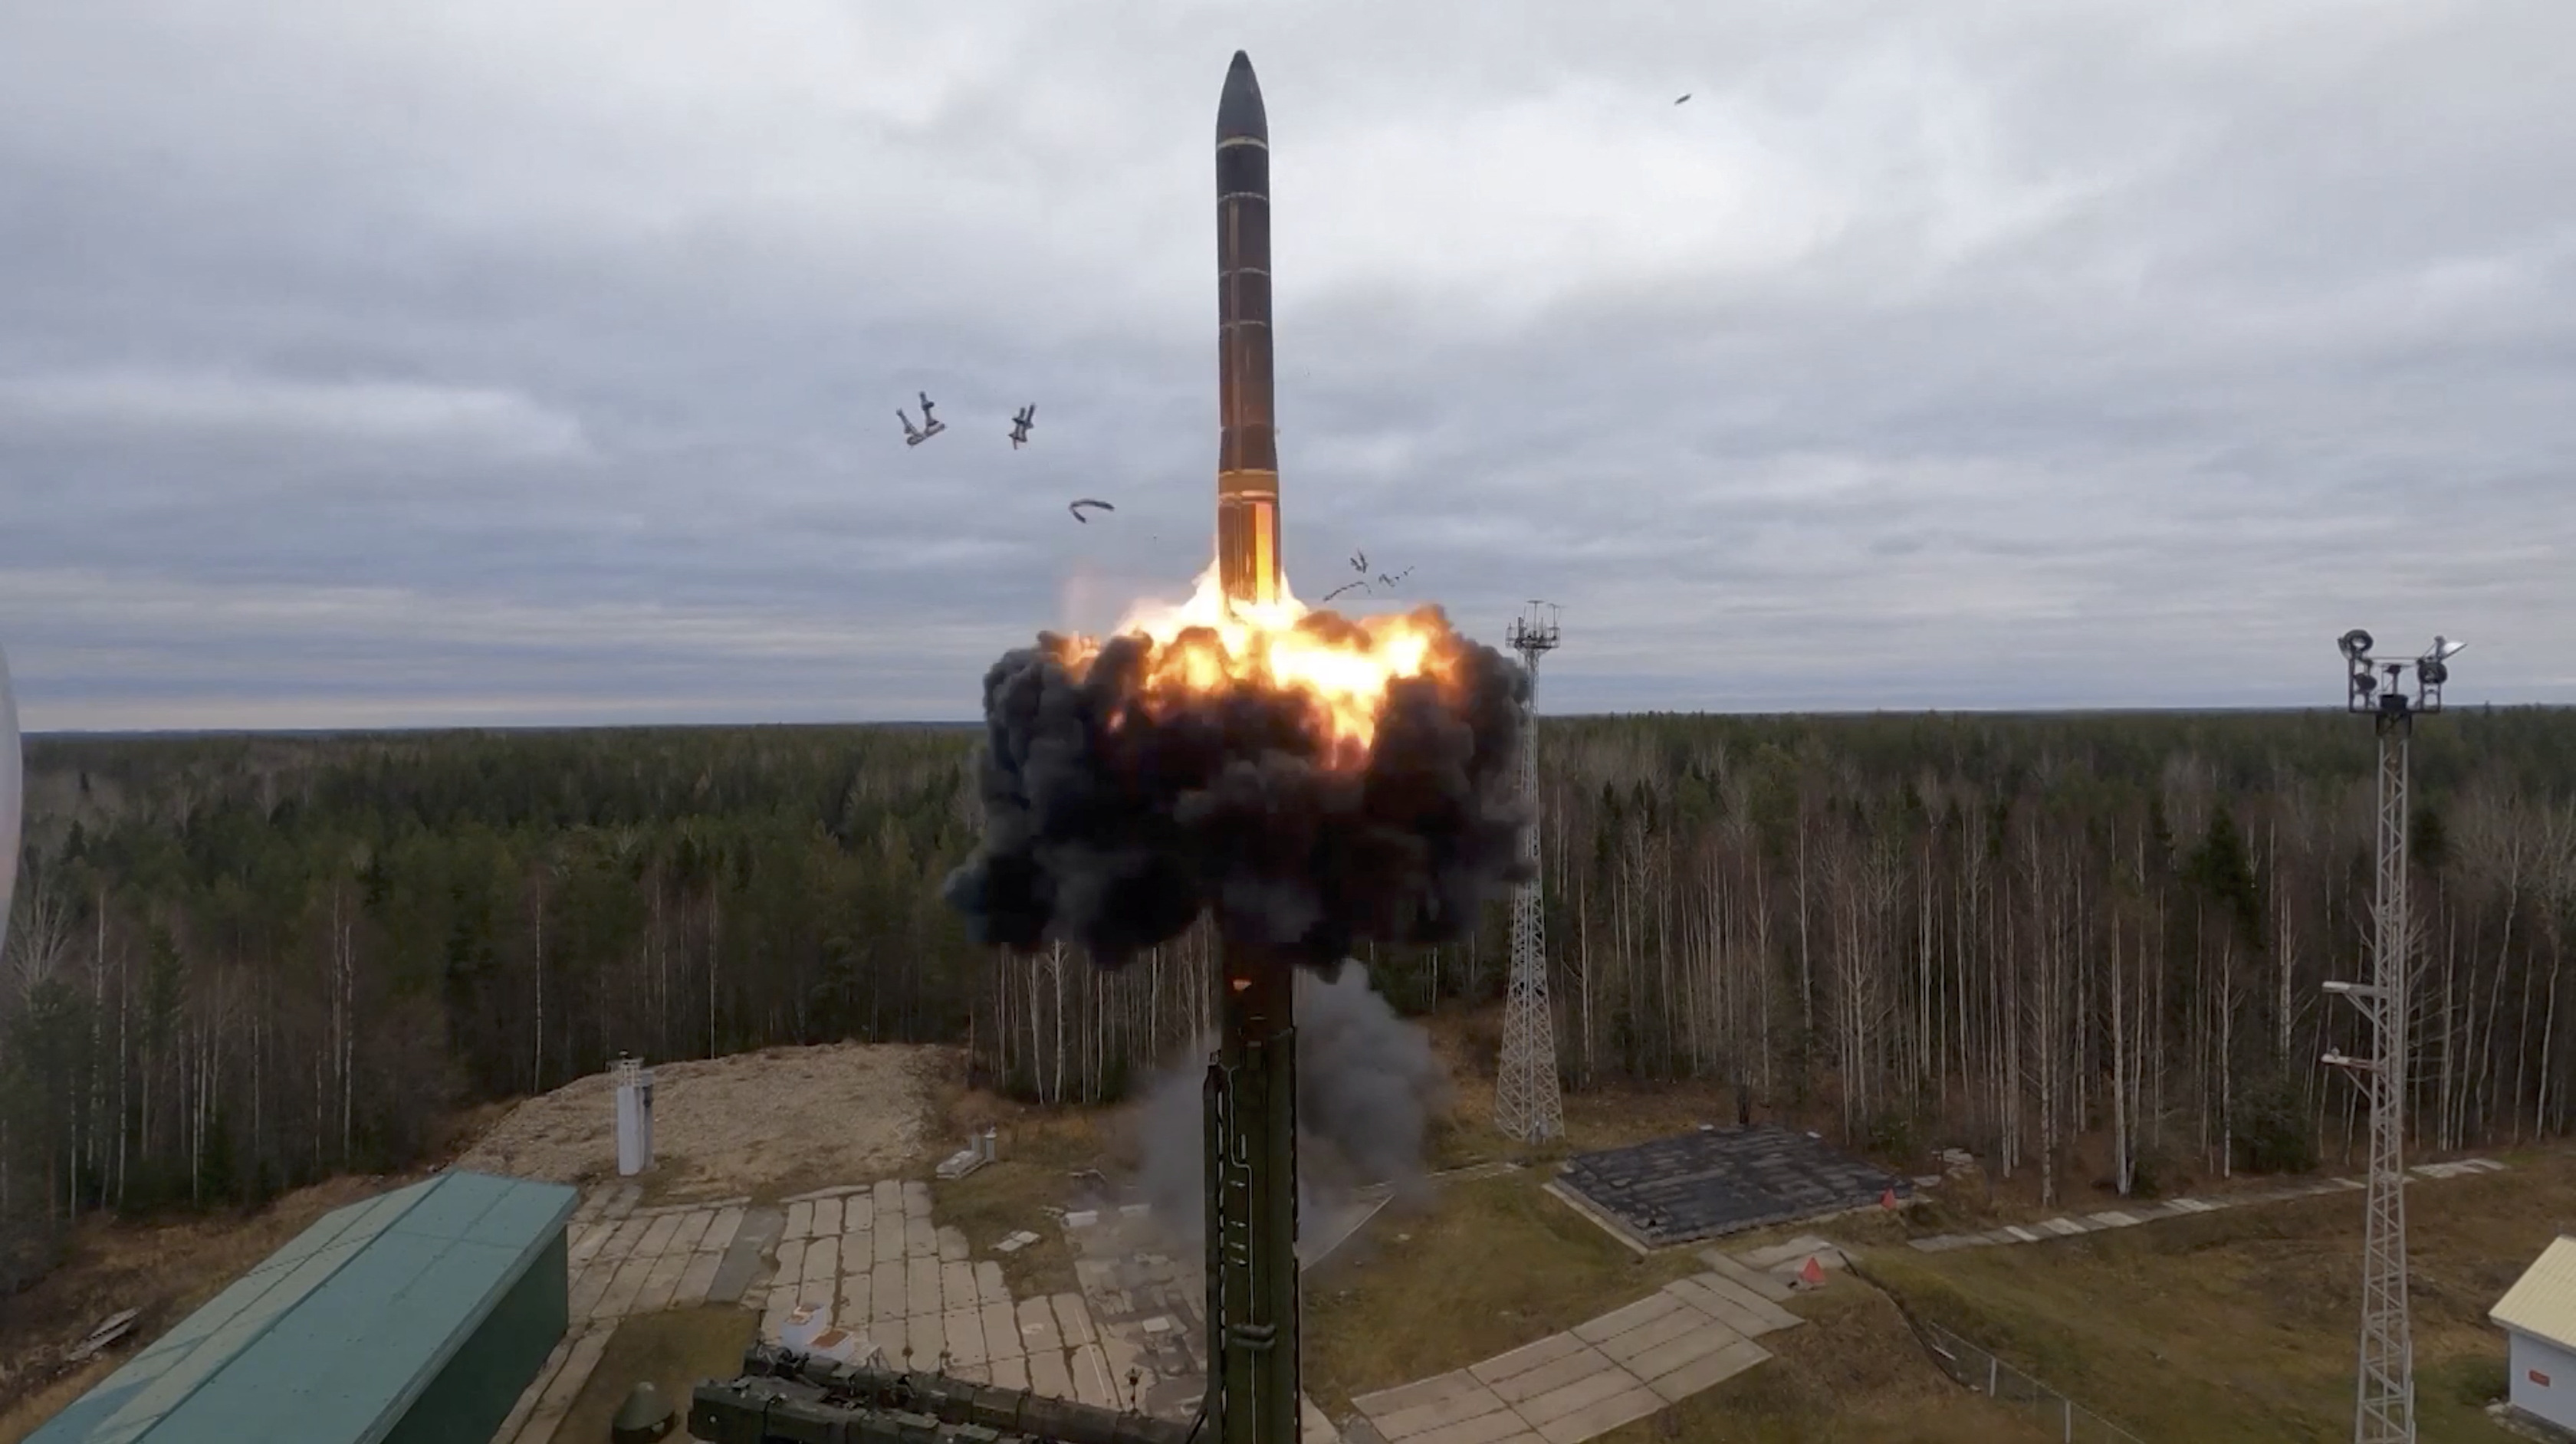 El misil balístico intercontinental Yars lanzado durante los ejercicios realizados por las fuerzas nucleares estratégicas de Rusia (Ministerio de Defensa de Rusia/REUTERS)
